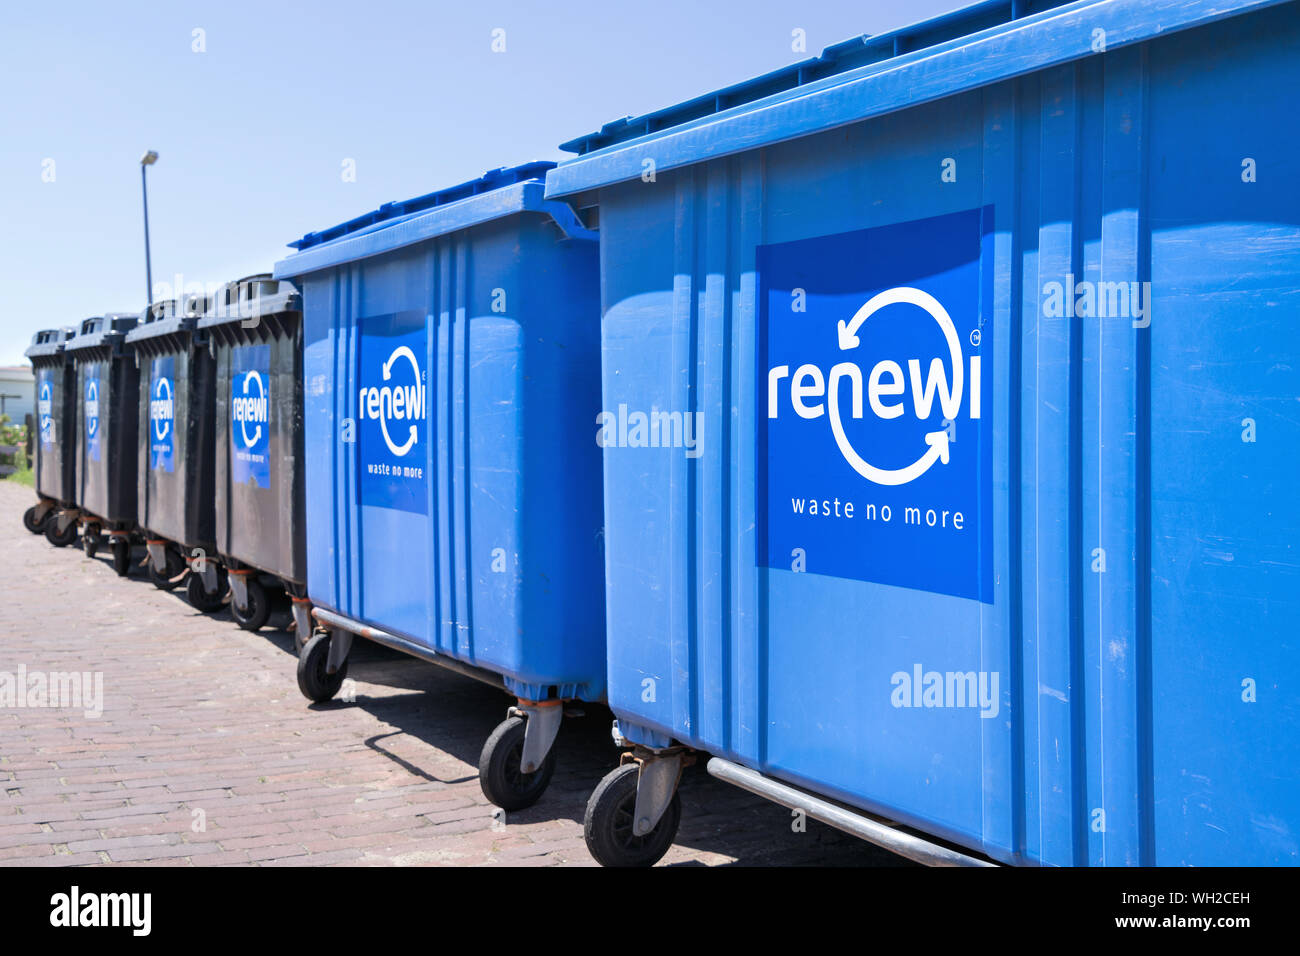 Renewi Abfallbehälter. Renewi plc ist eine der führenden europäischen Abfallwirtschaft Unternehmen in Europa und Nordamerika. Stockfoto